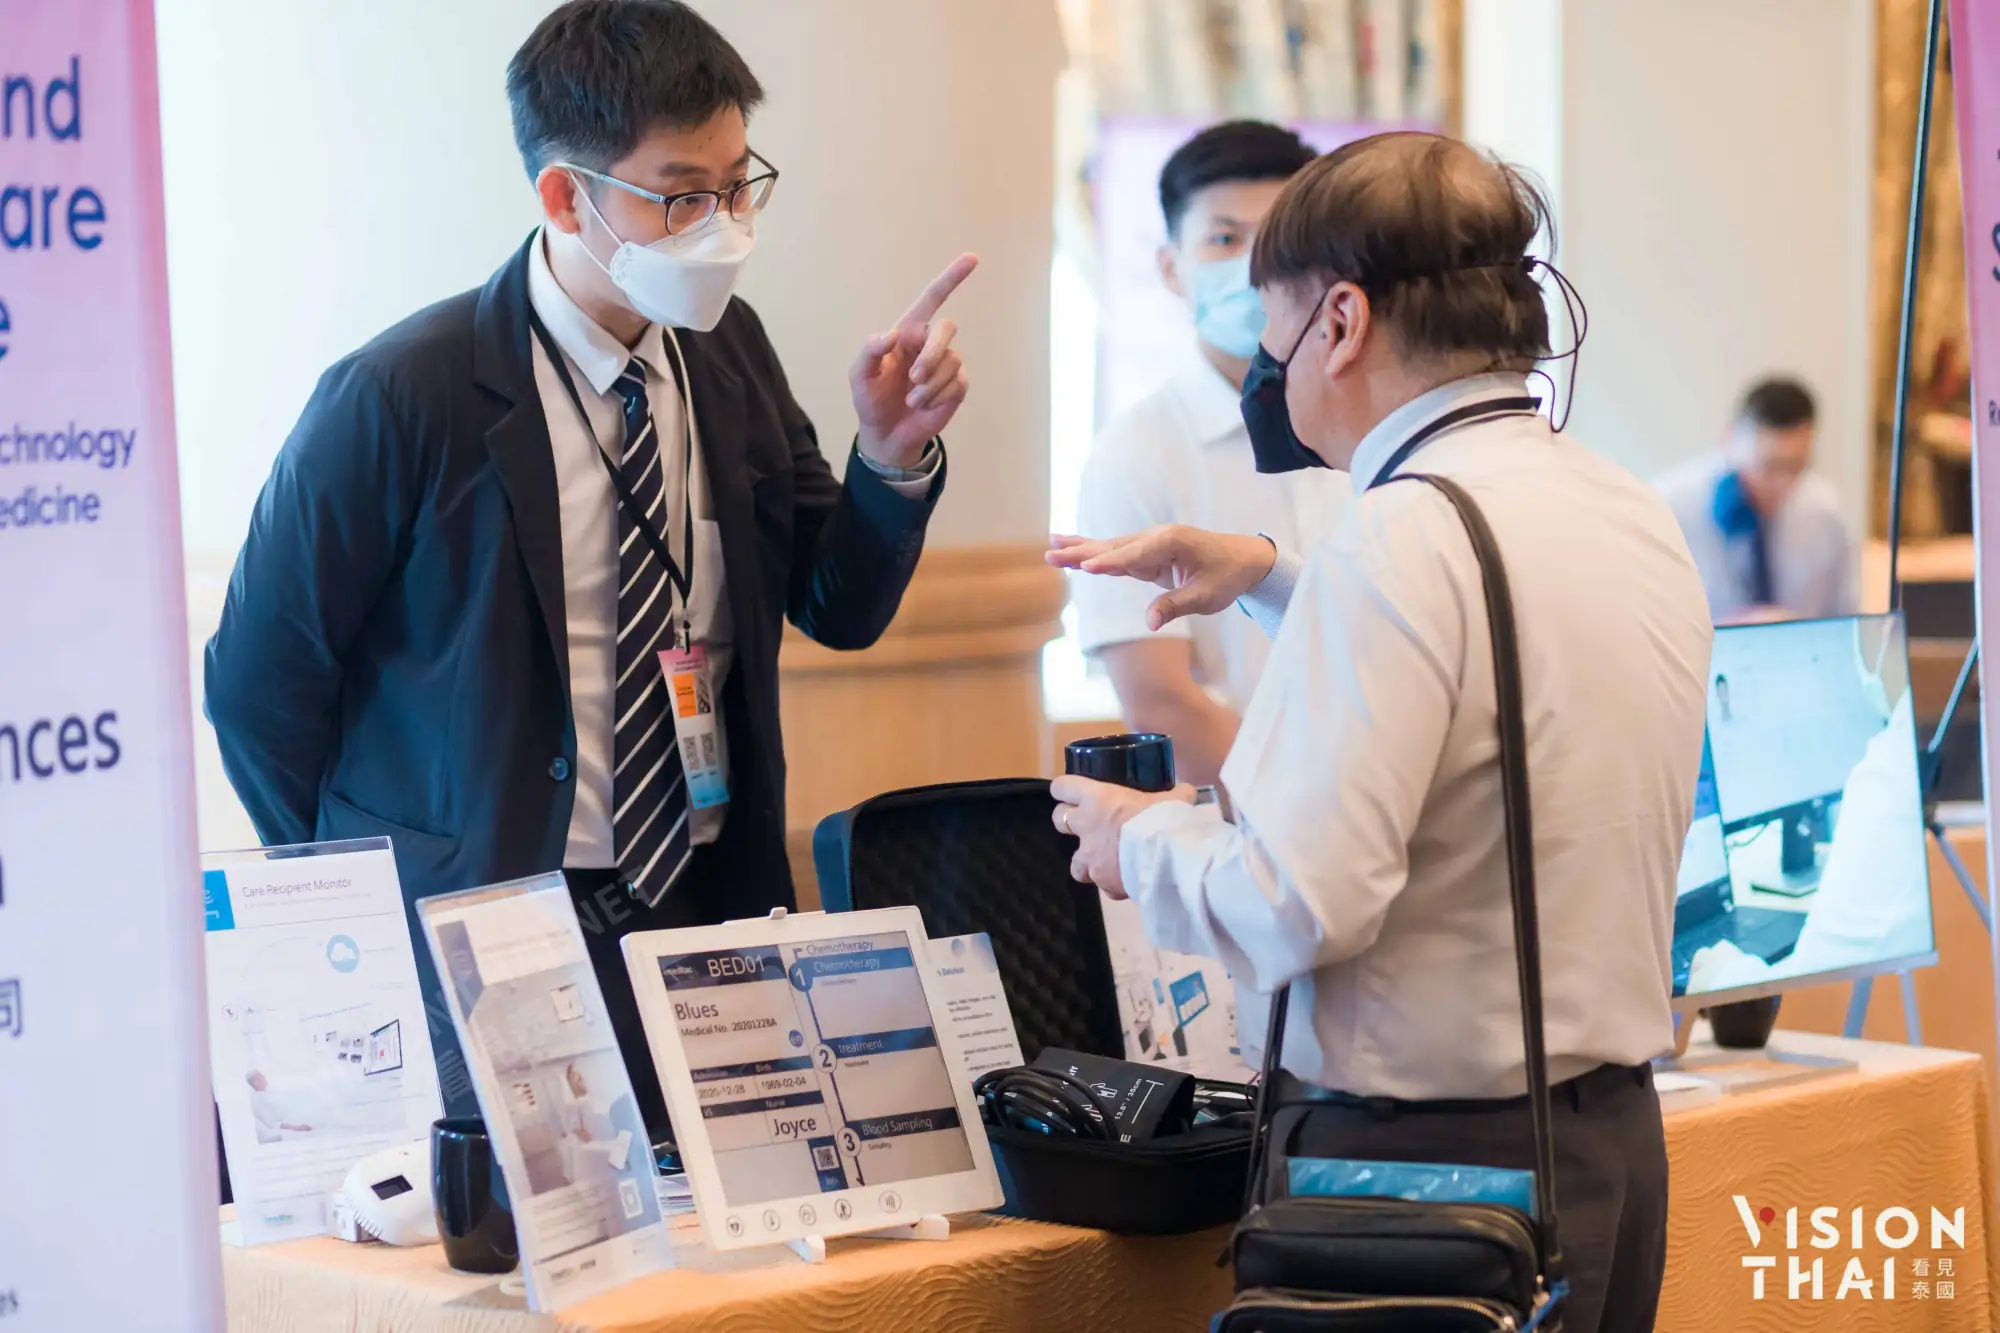 15家臺灣智慧醫療廠商參與「2022臺泰智慧醫療國際研討會」現場展示產品（來源：看見泰國）